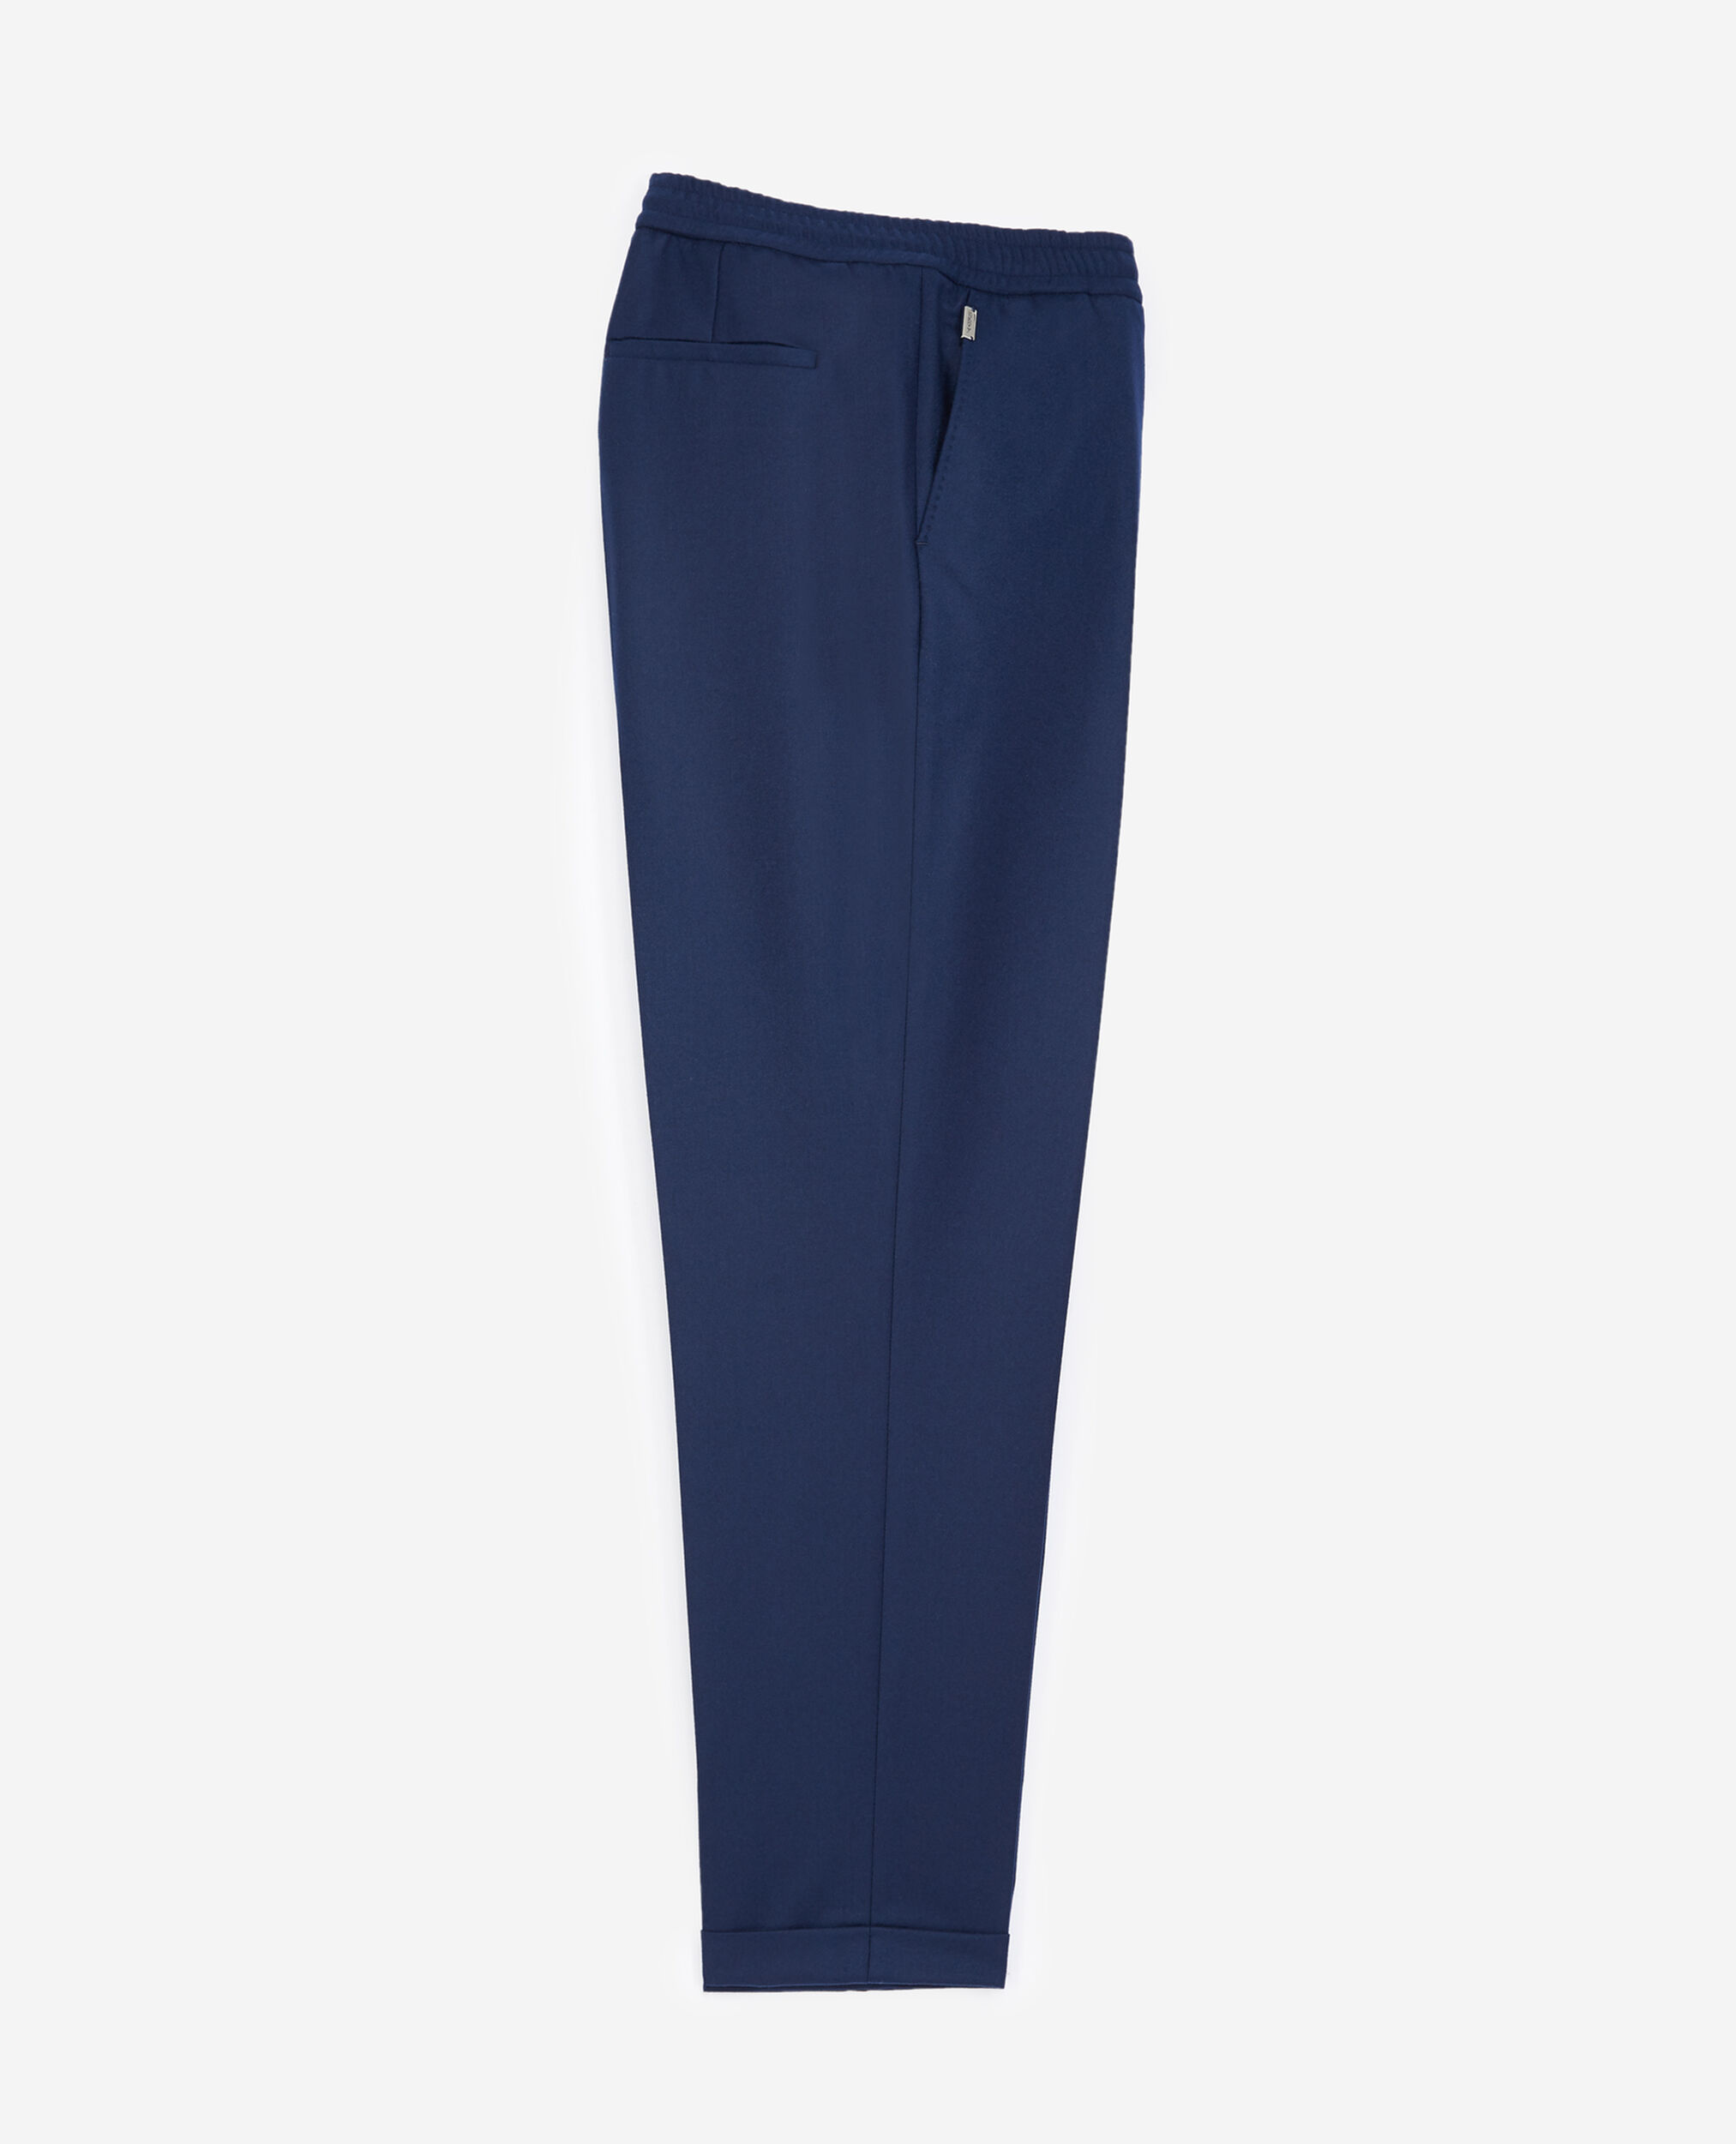 Pantalon laine bleu à élastique, NAVY, hi-res image number null